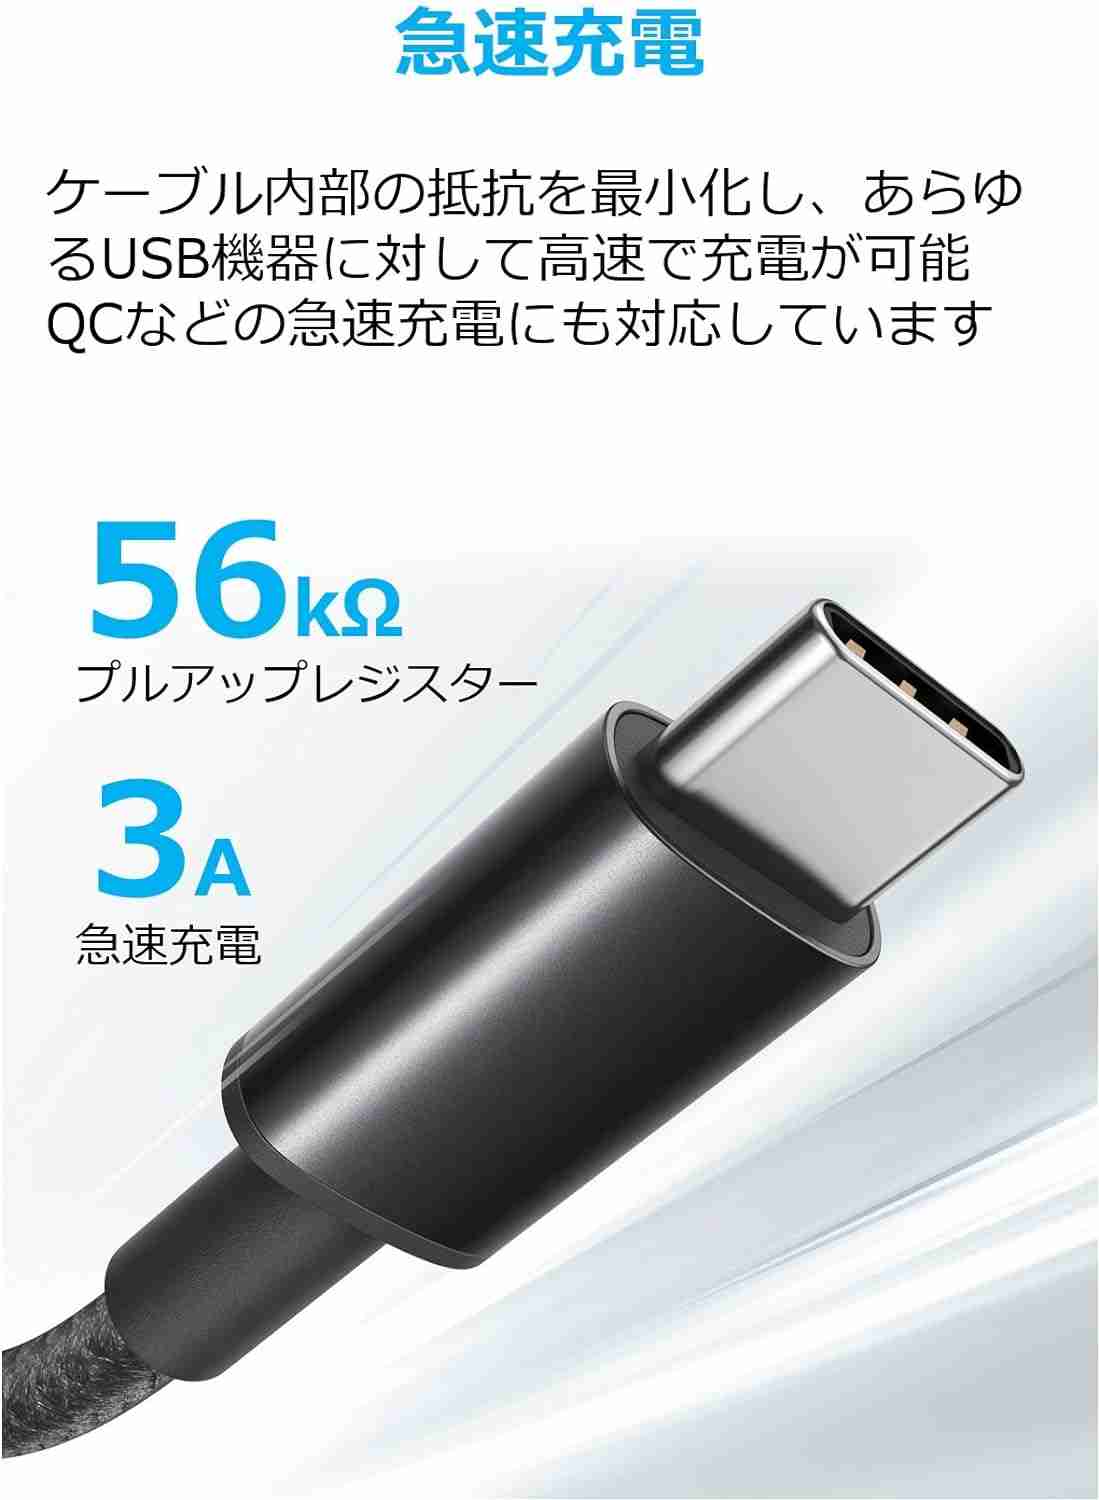 「Anker 高耐久ナイロン USB-C & USB-A ケーブル (USB2.0対応)」は高速充電が可能